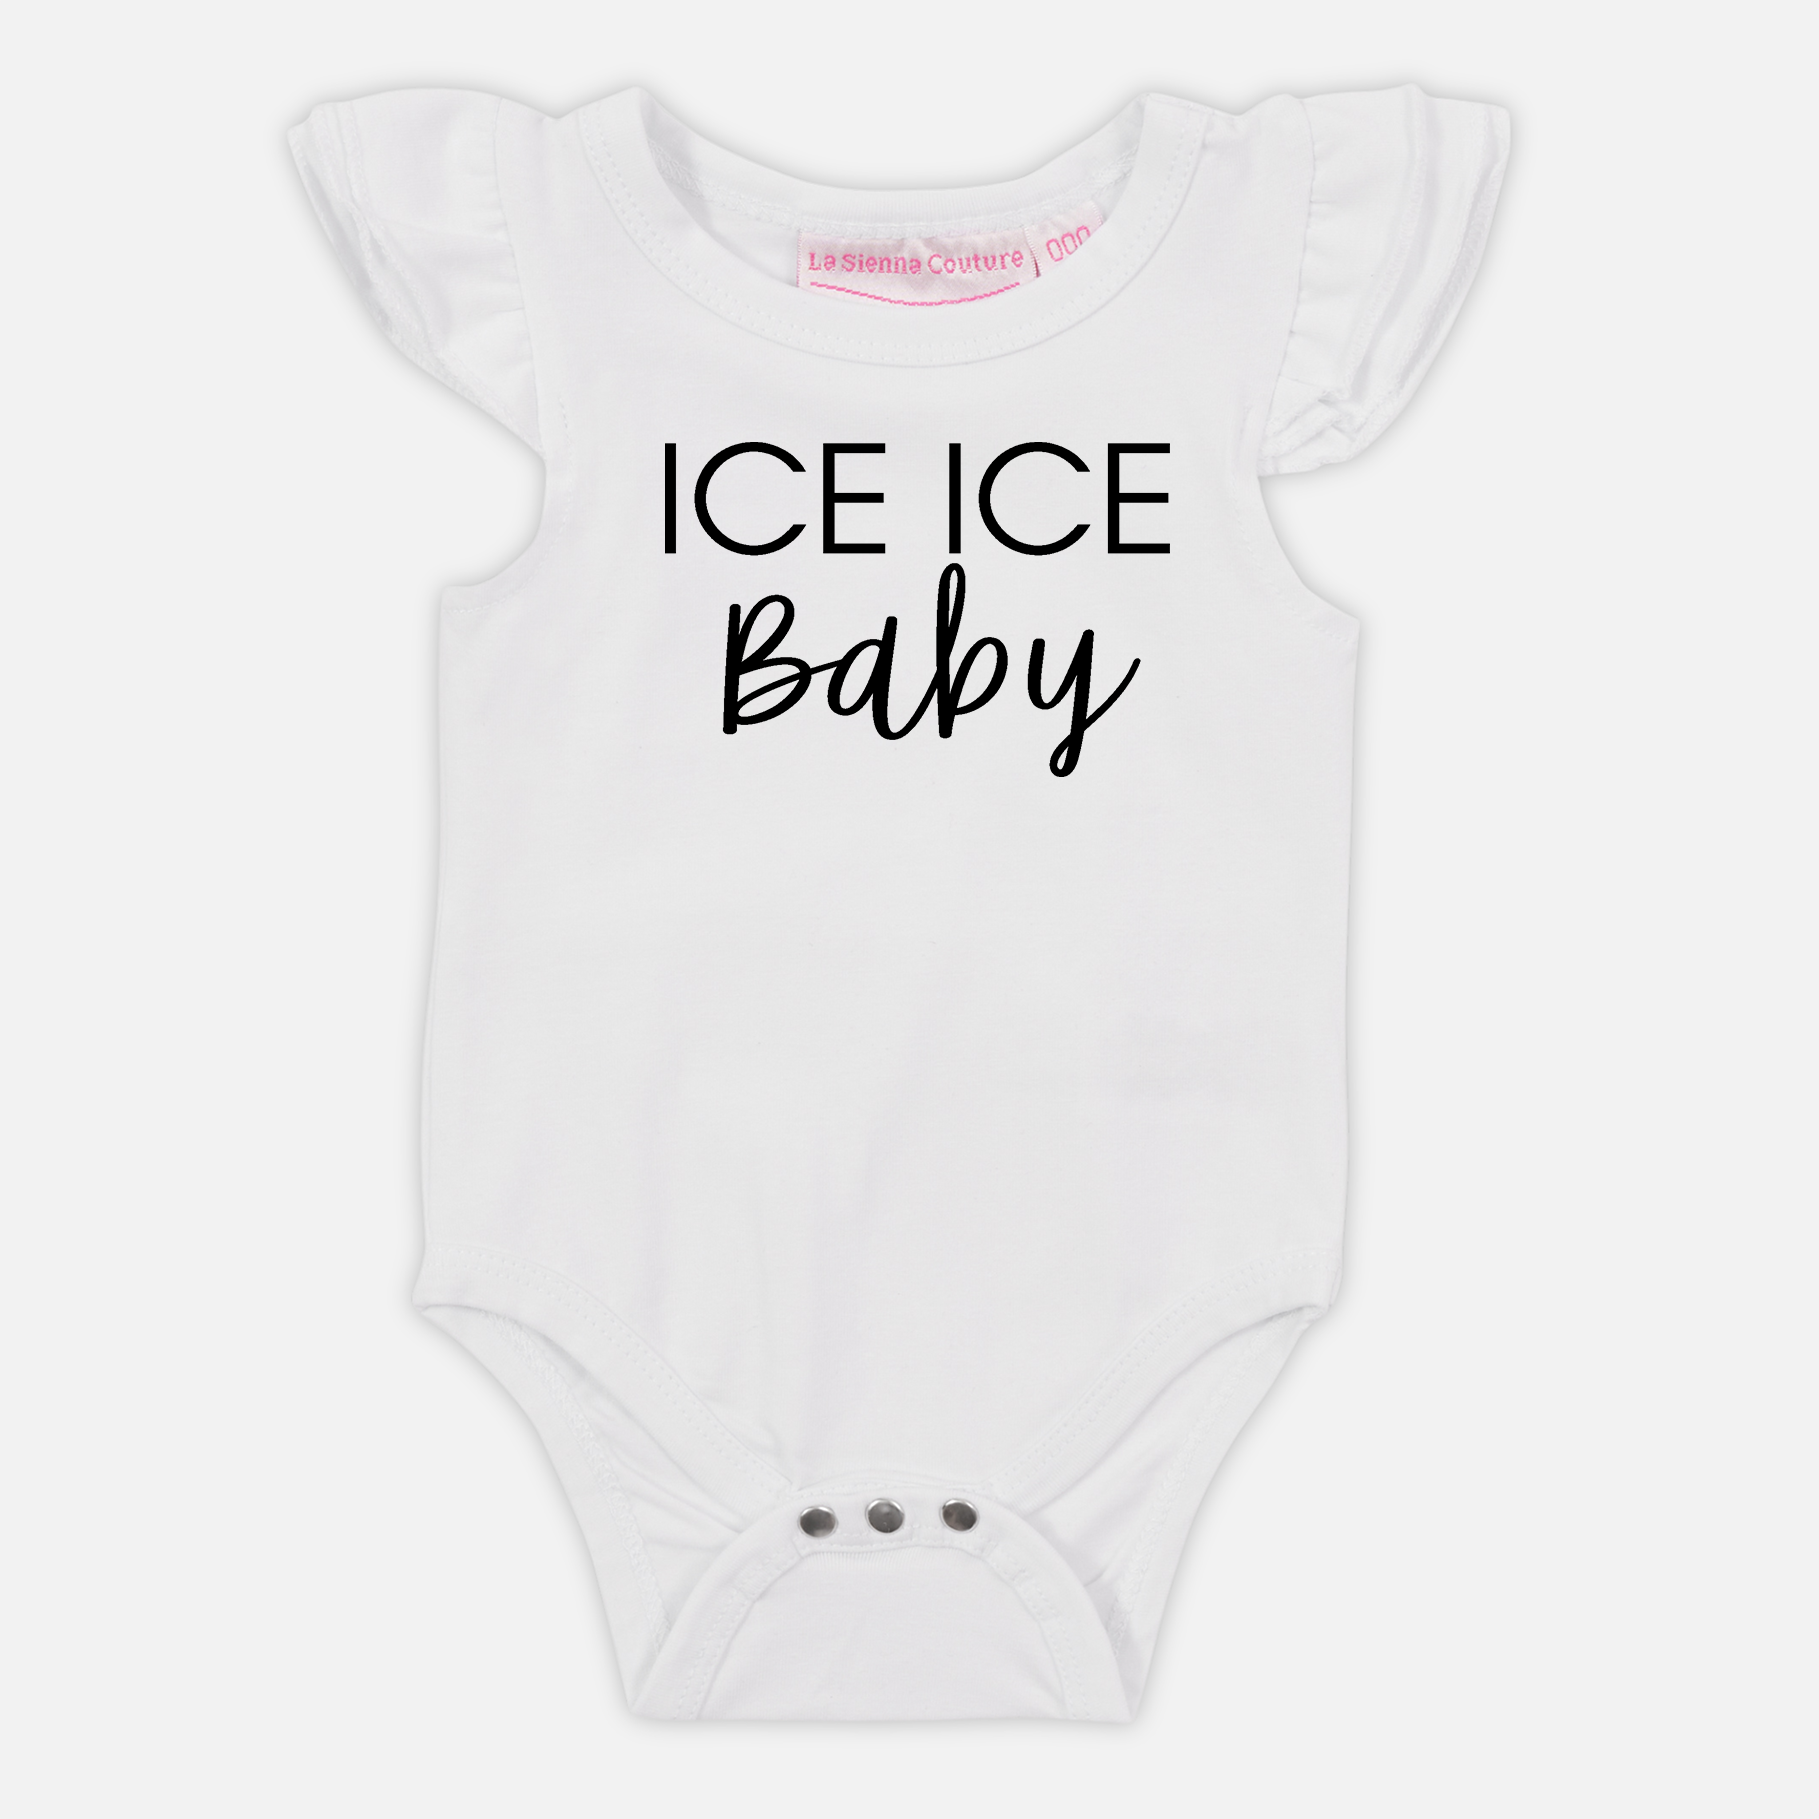 ICE ICE baby - Custom